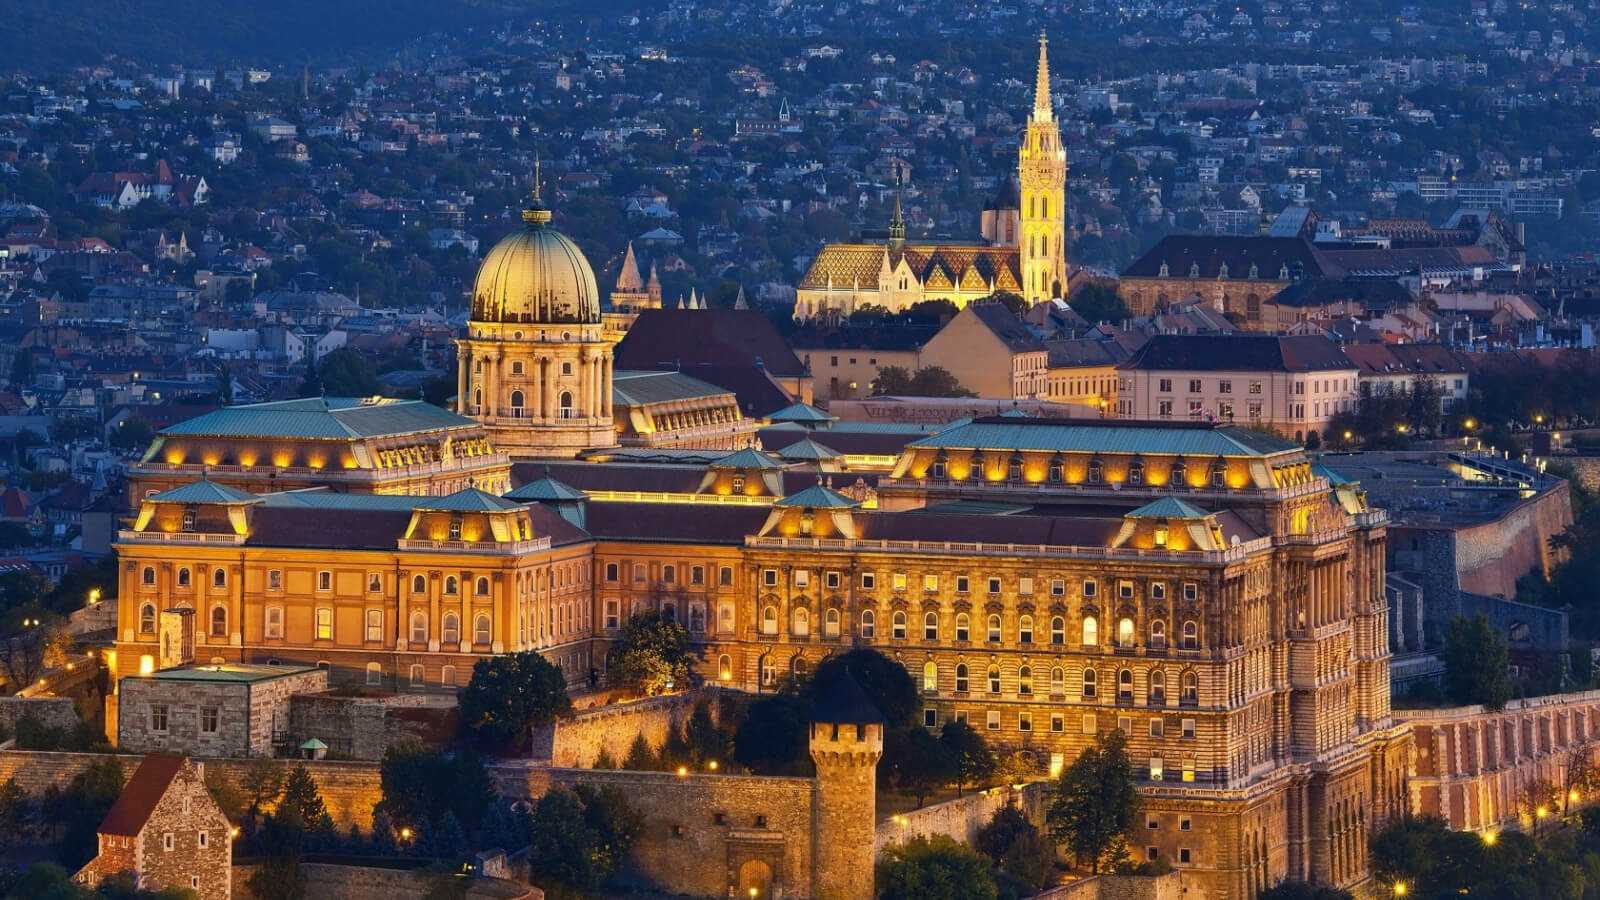 Королевский дворец или Будайский дворец Budavari Palota - исторический замок и дворцовый комплекс в Будапеште, некогда являвшийся резиденцией венгерских королей Расположен дворец на вершине Замковой горы, в историческом районе замка Буды Дворец входит в с